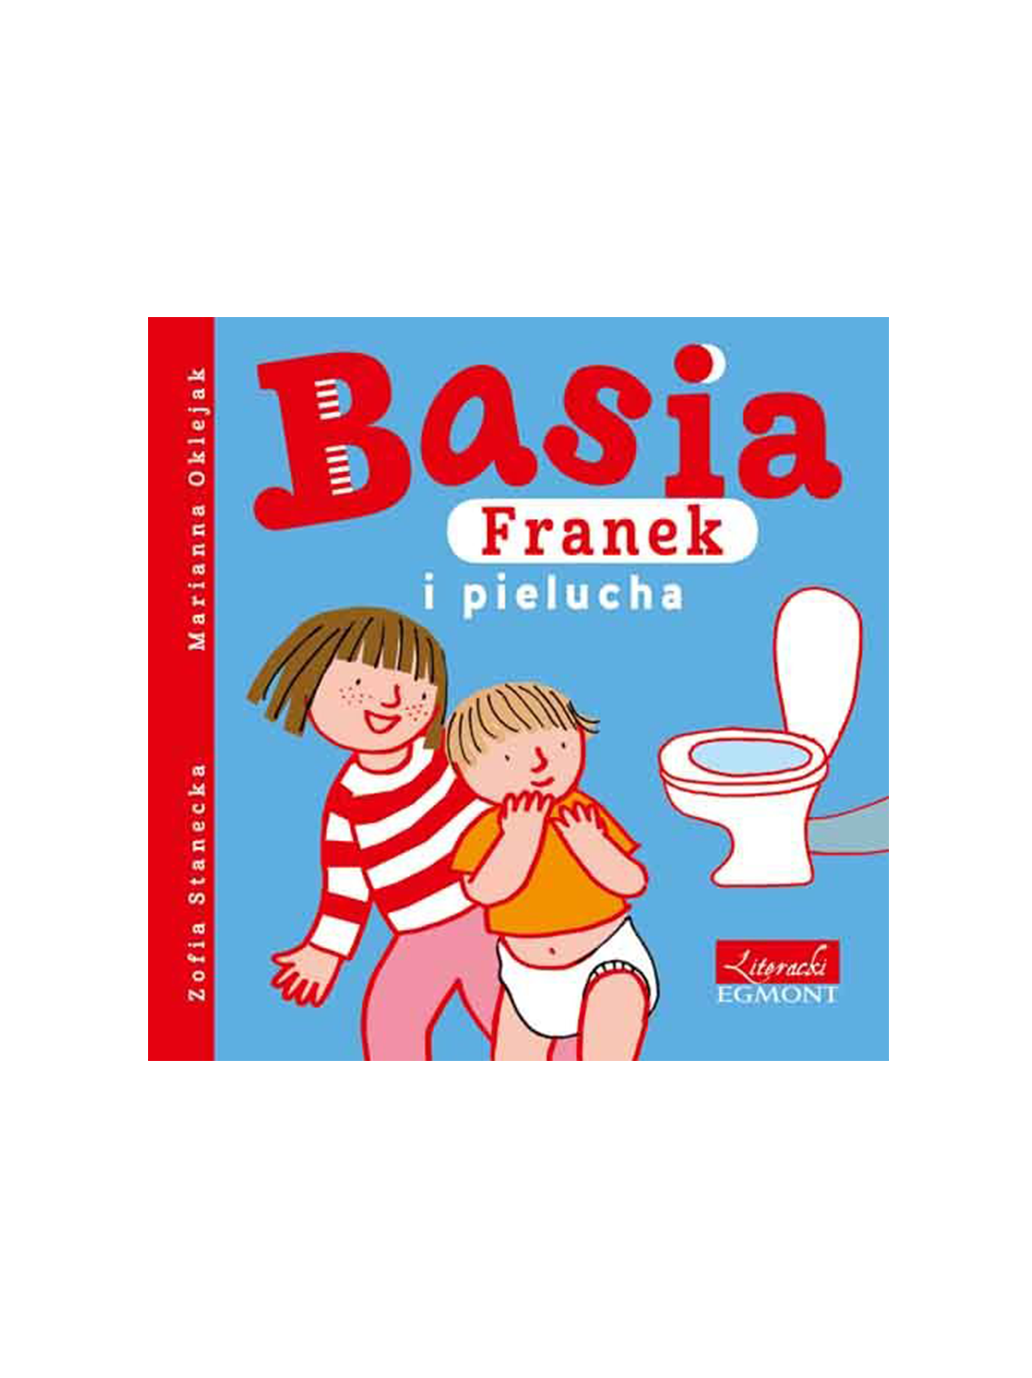 Basia, Franek et la couche